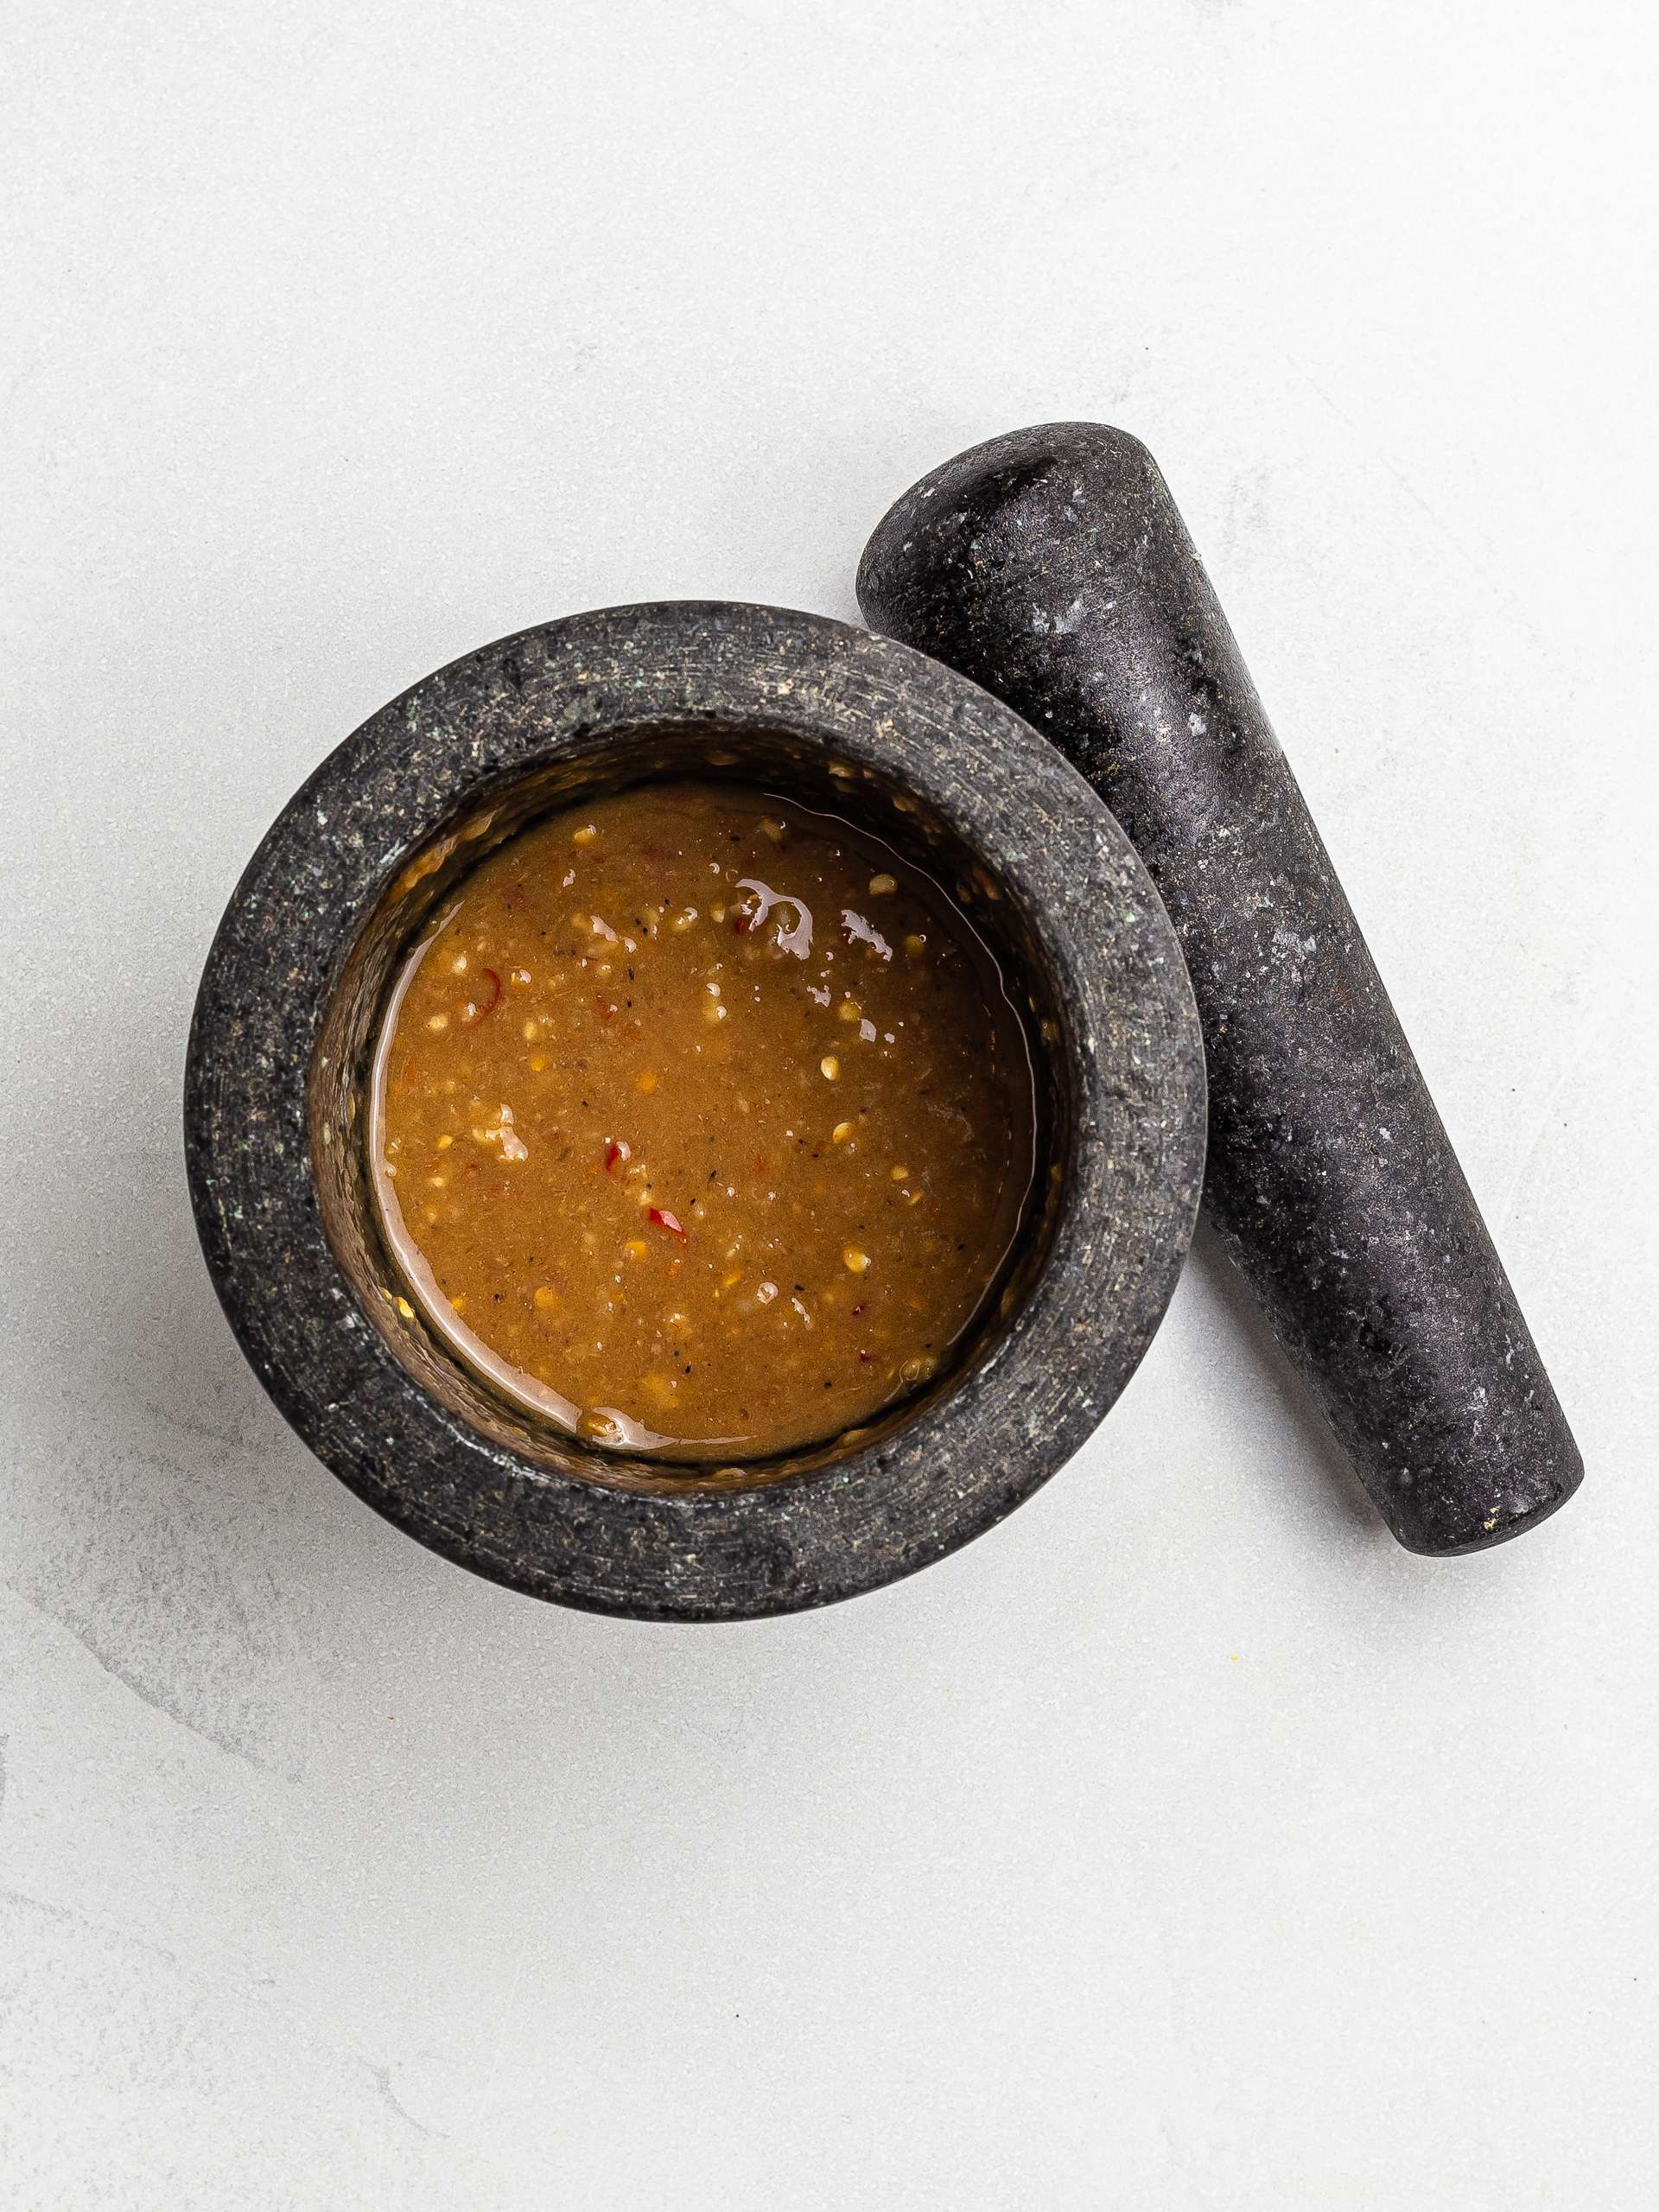 lao papaya salad sauce in a mortar